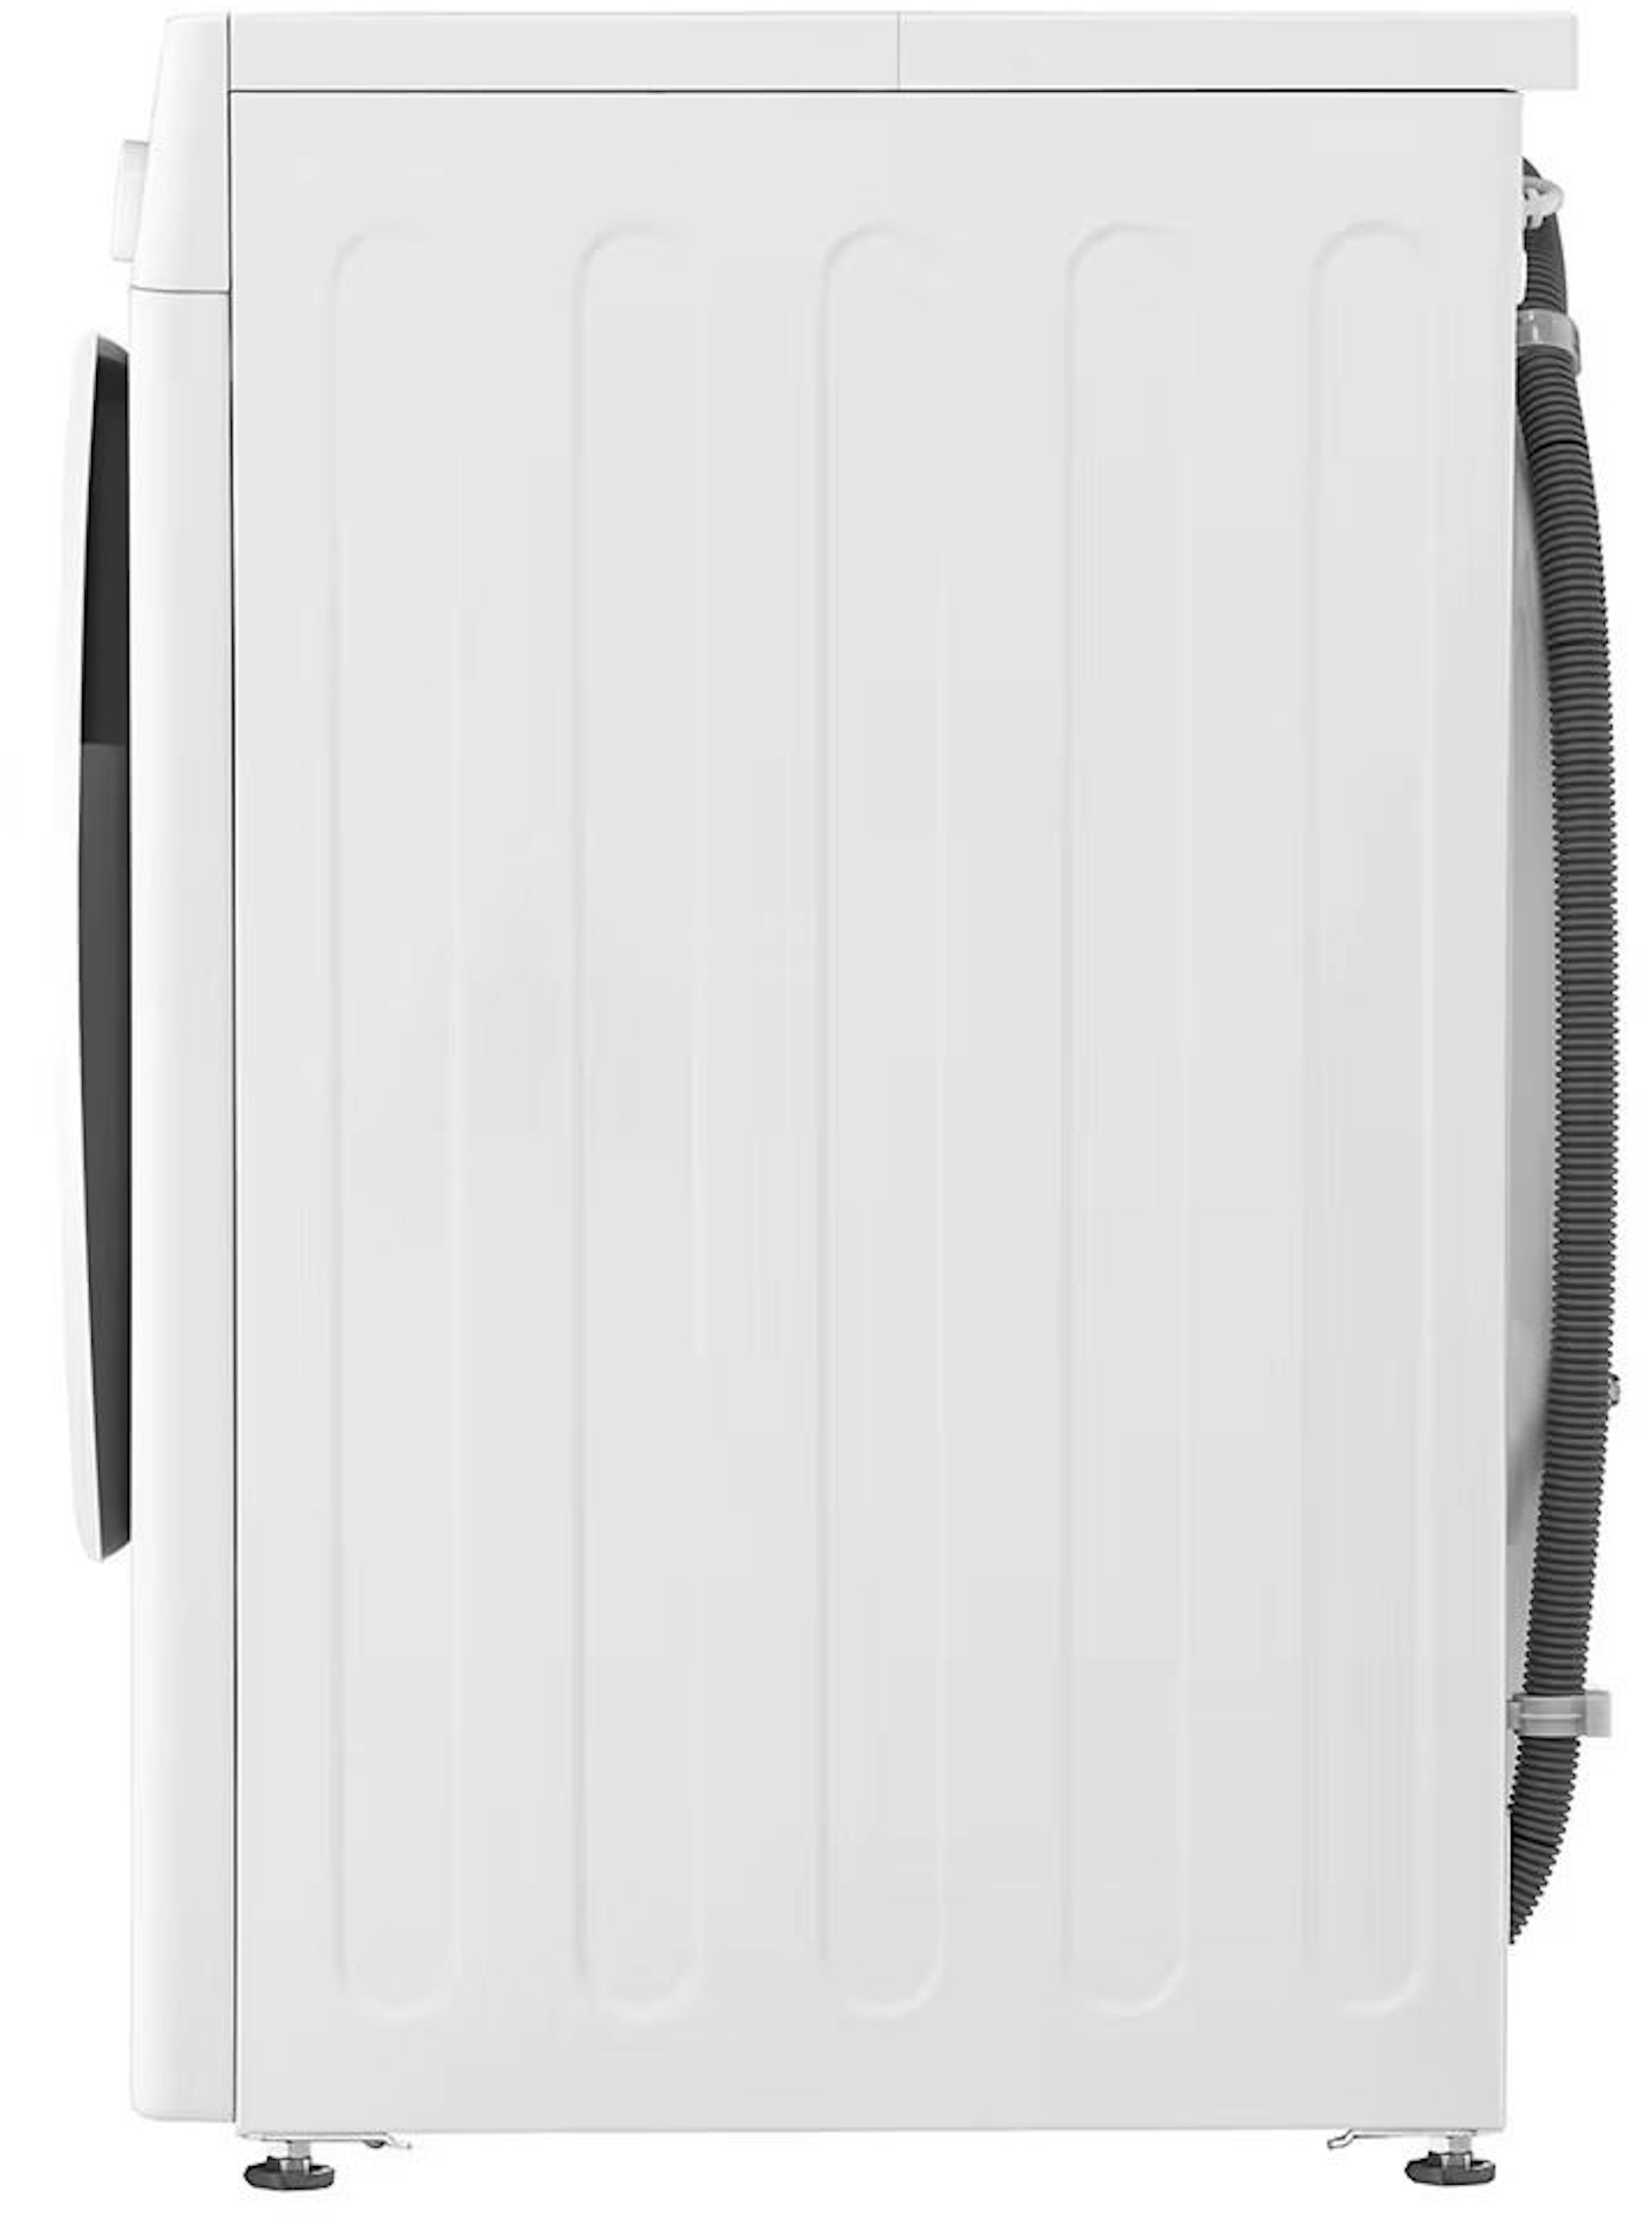 LG GC3R509S0  wasmachine afbeelding 6